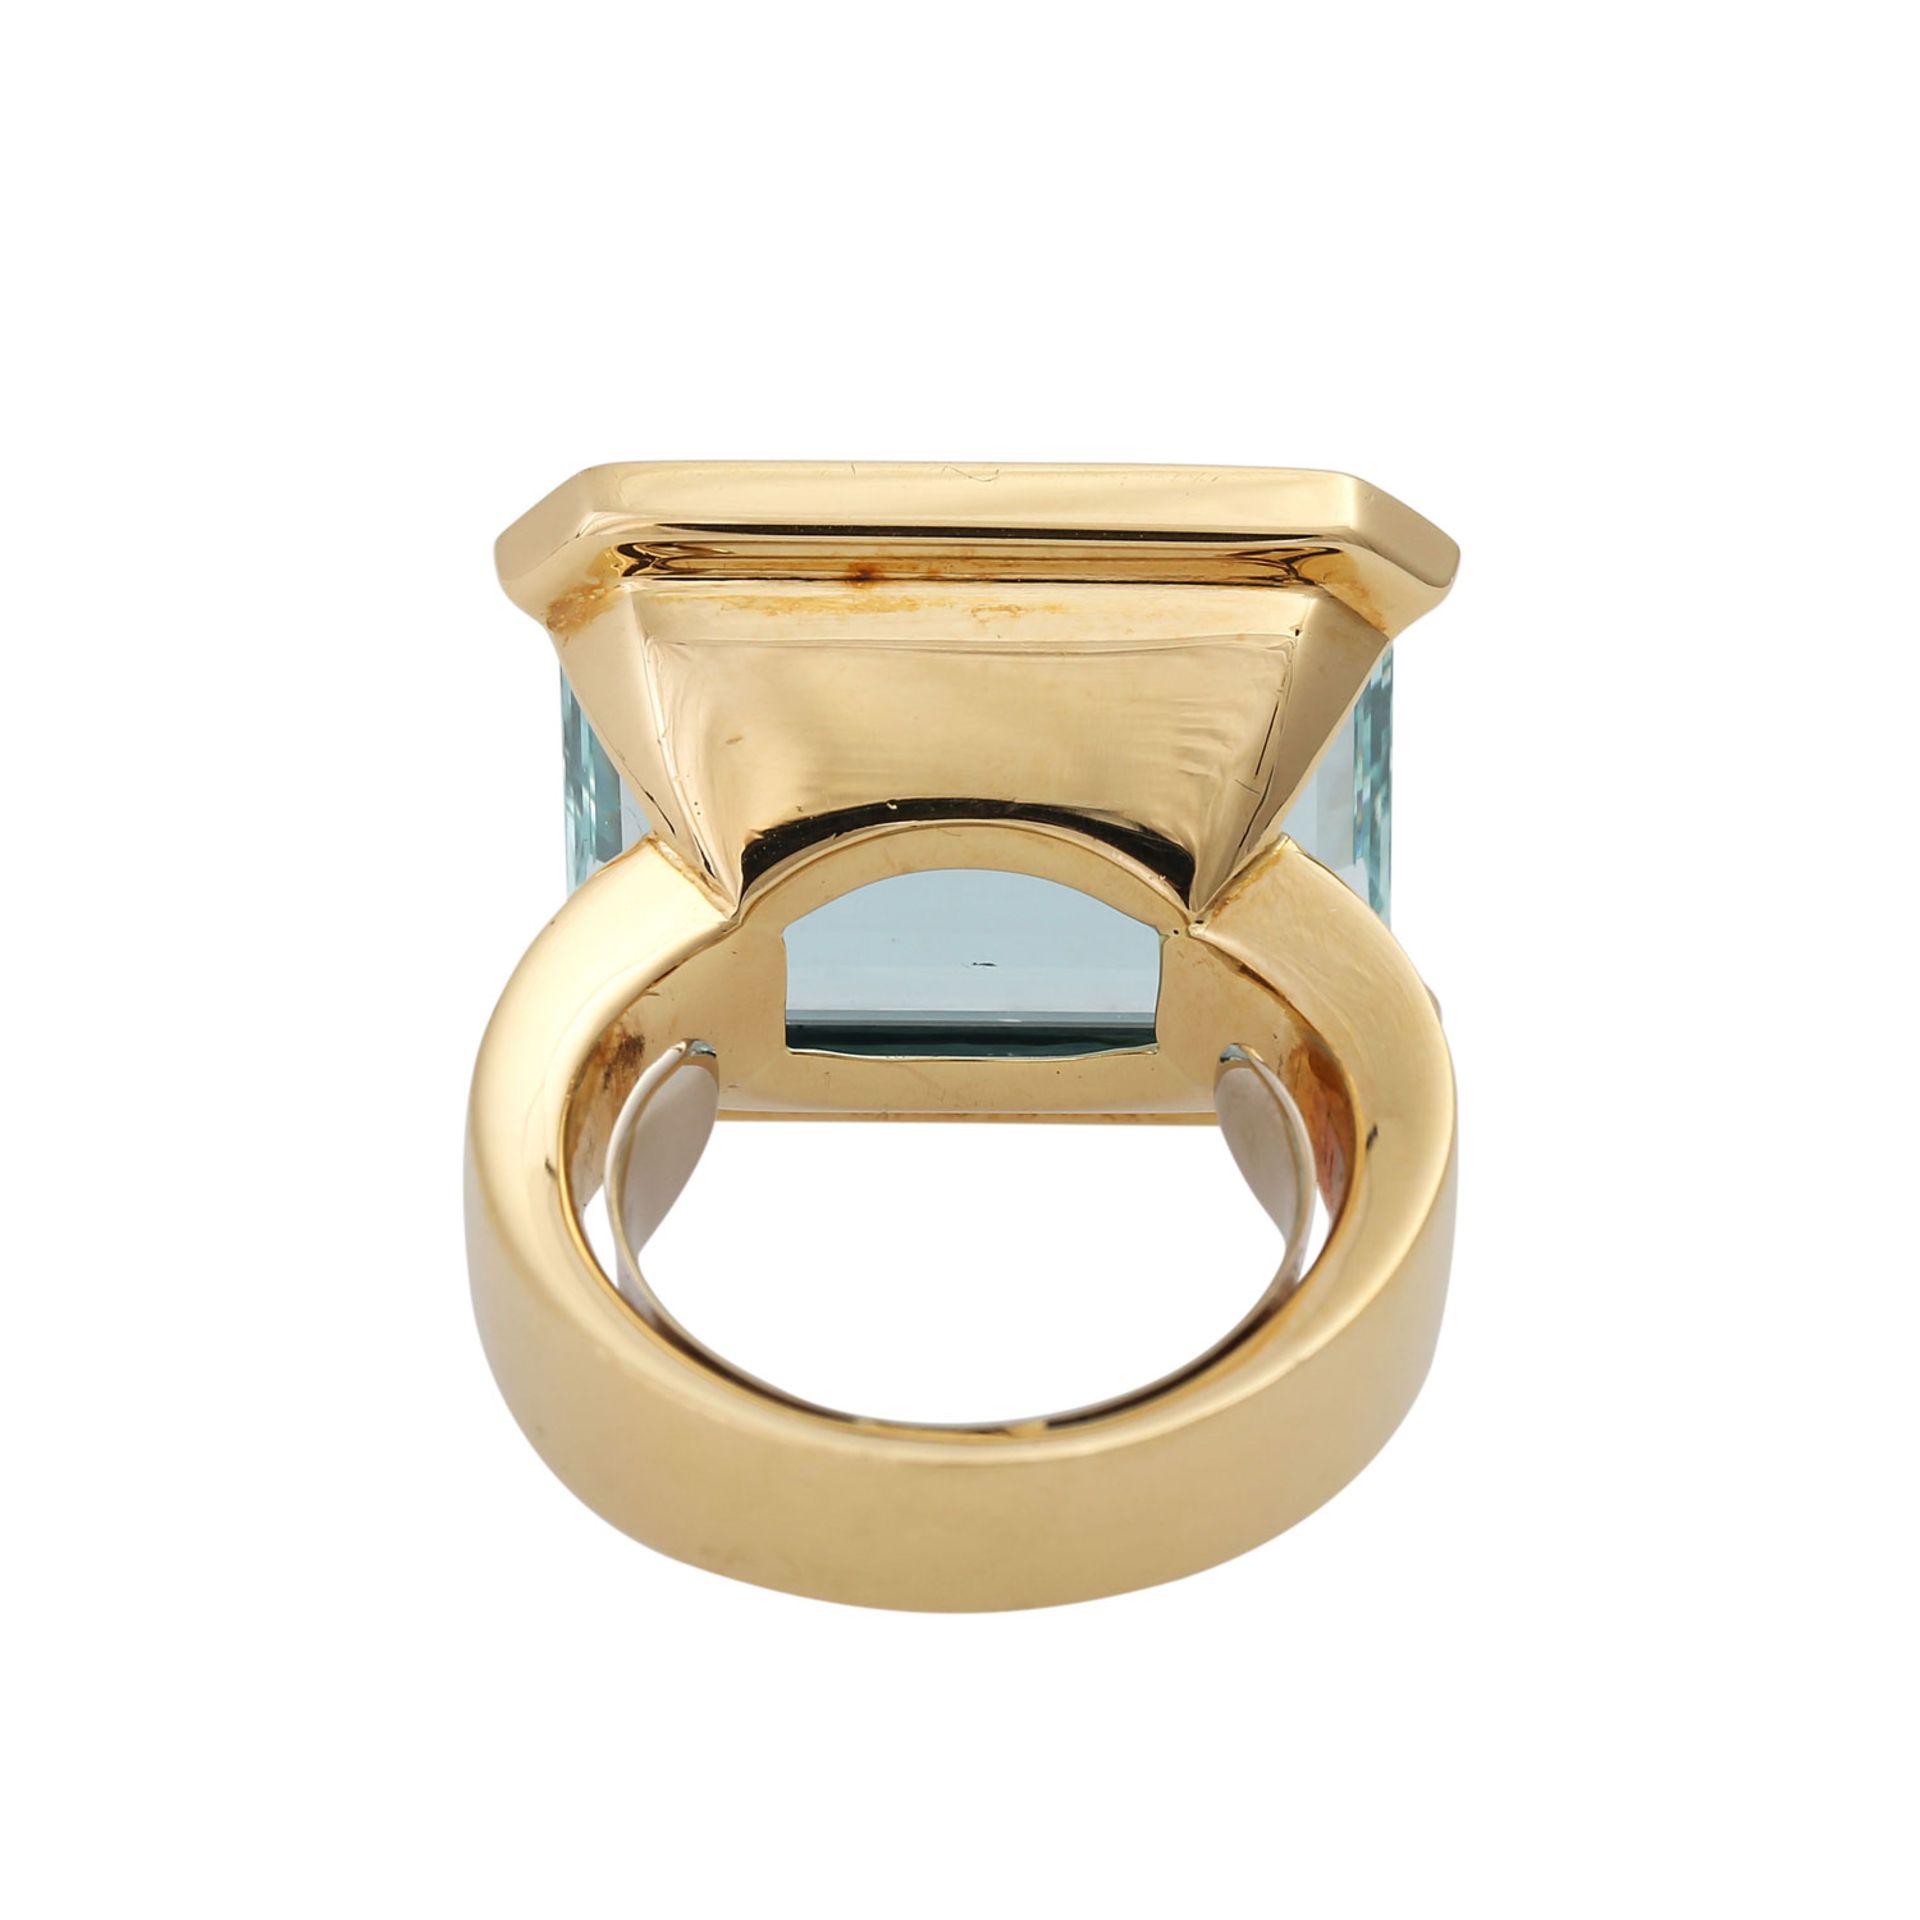 Ring mit Aquamarinca. 20x15 mm sowie 30 Brill. zus. ca. 0,3 ct, gute Farbe u. Reinheit, GG 18K. - Image 4 of 5